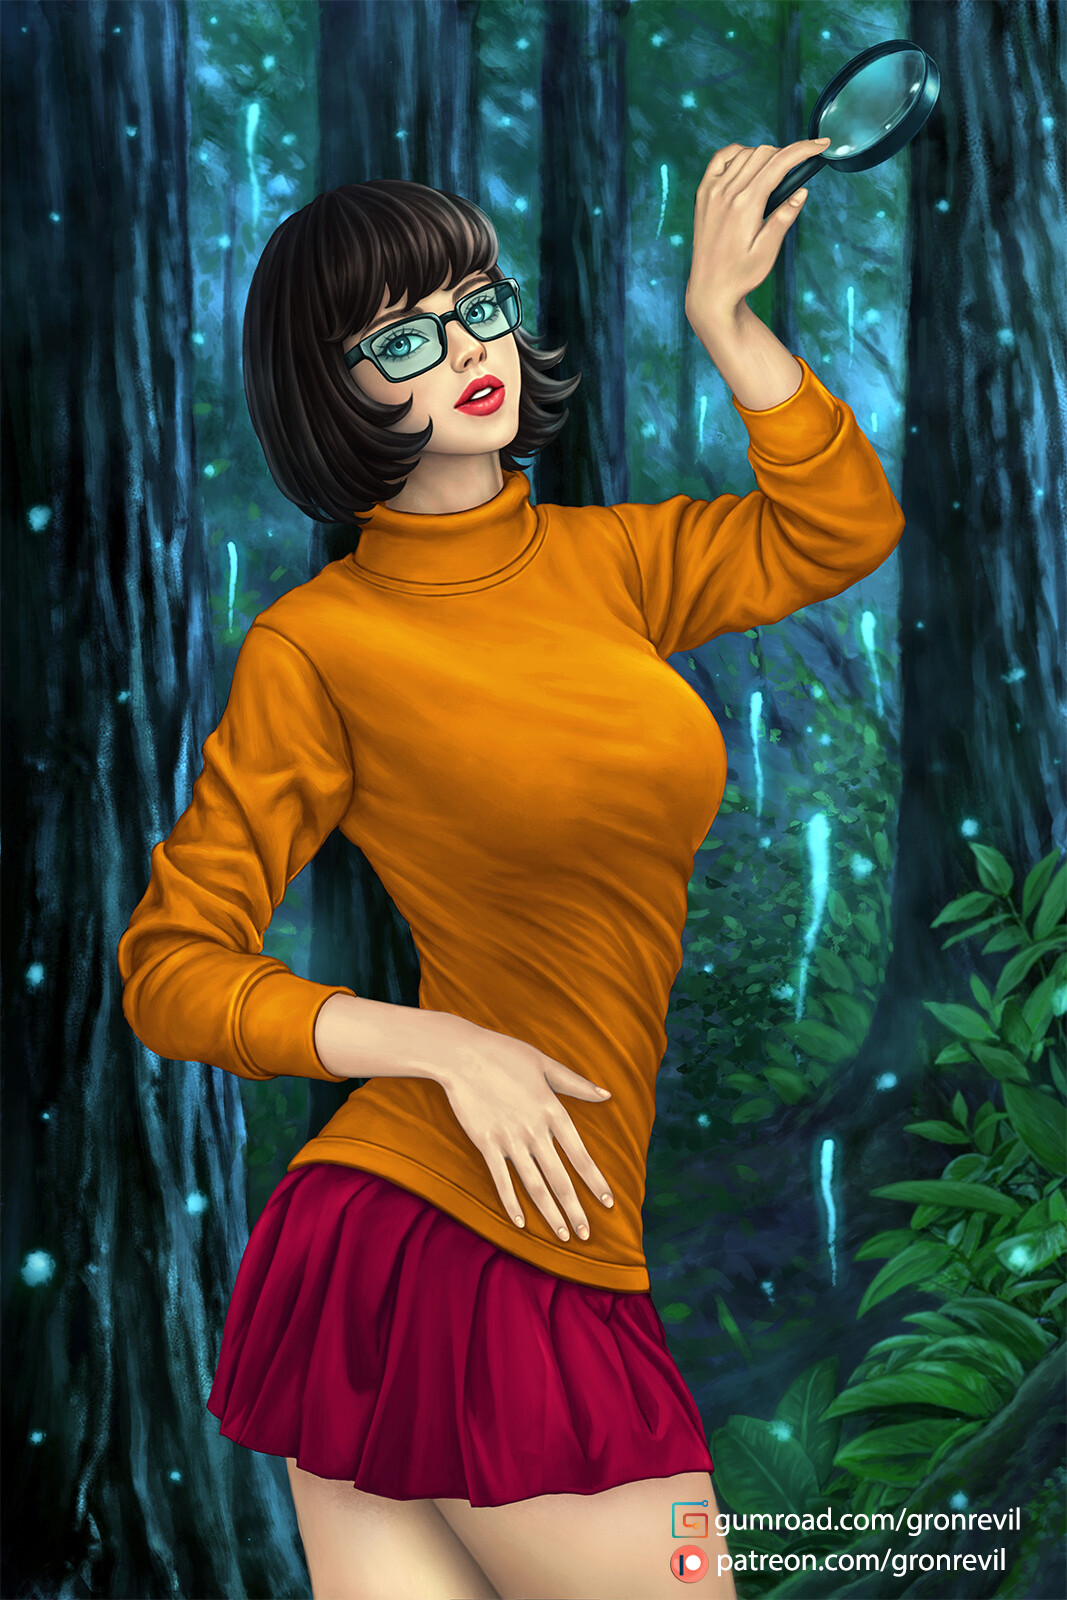 Best Velma Images On Pinterest Velma Dinkley Velma 1 Telegraph